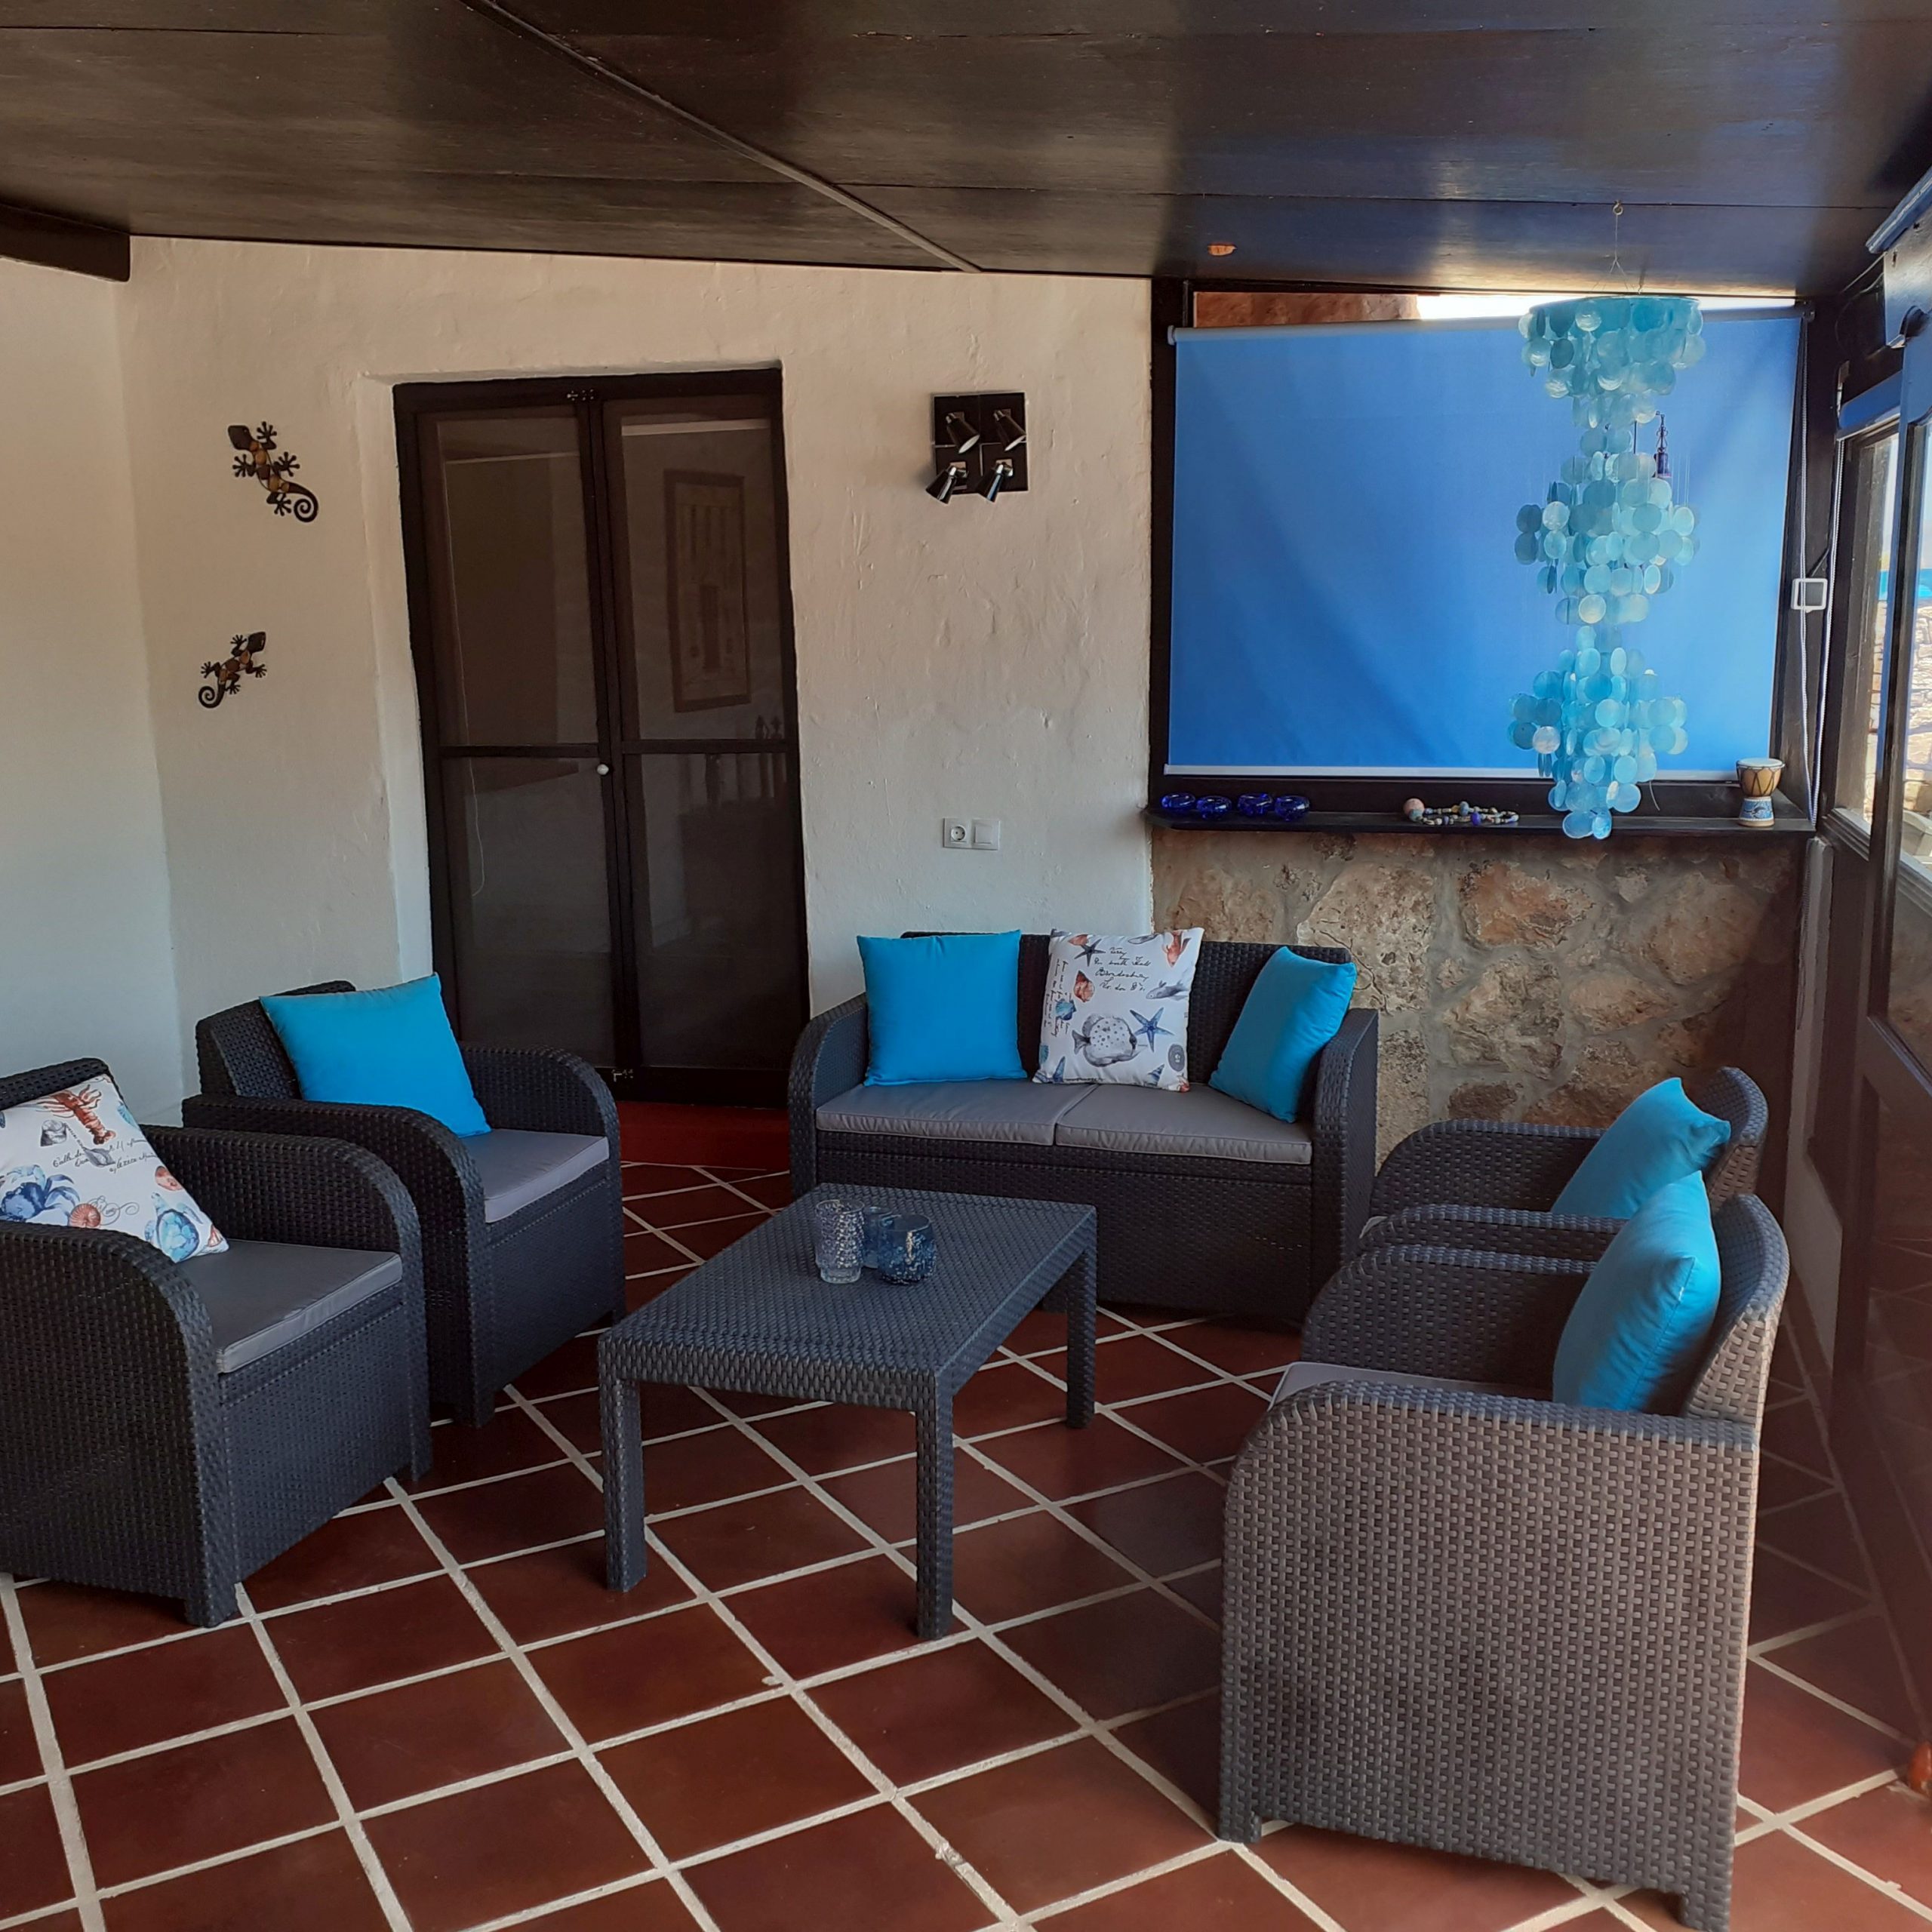 Villa Vital - Coliving para expats en Fuerteventura